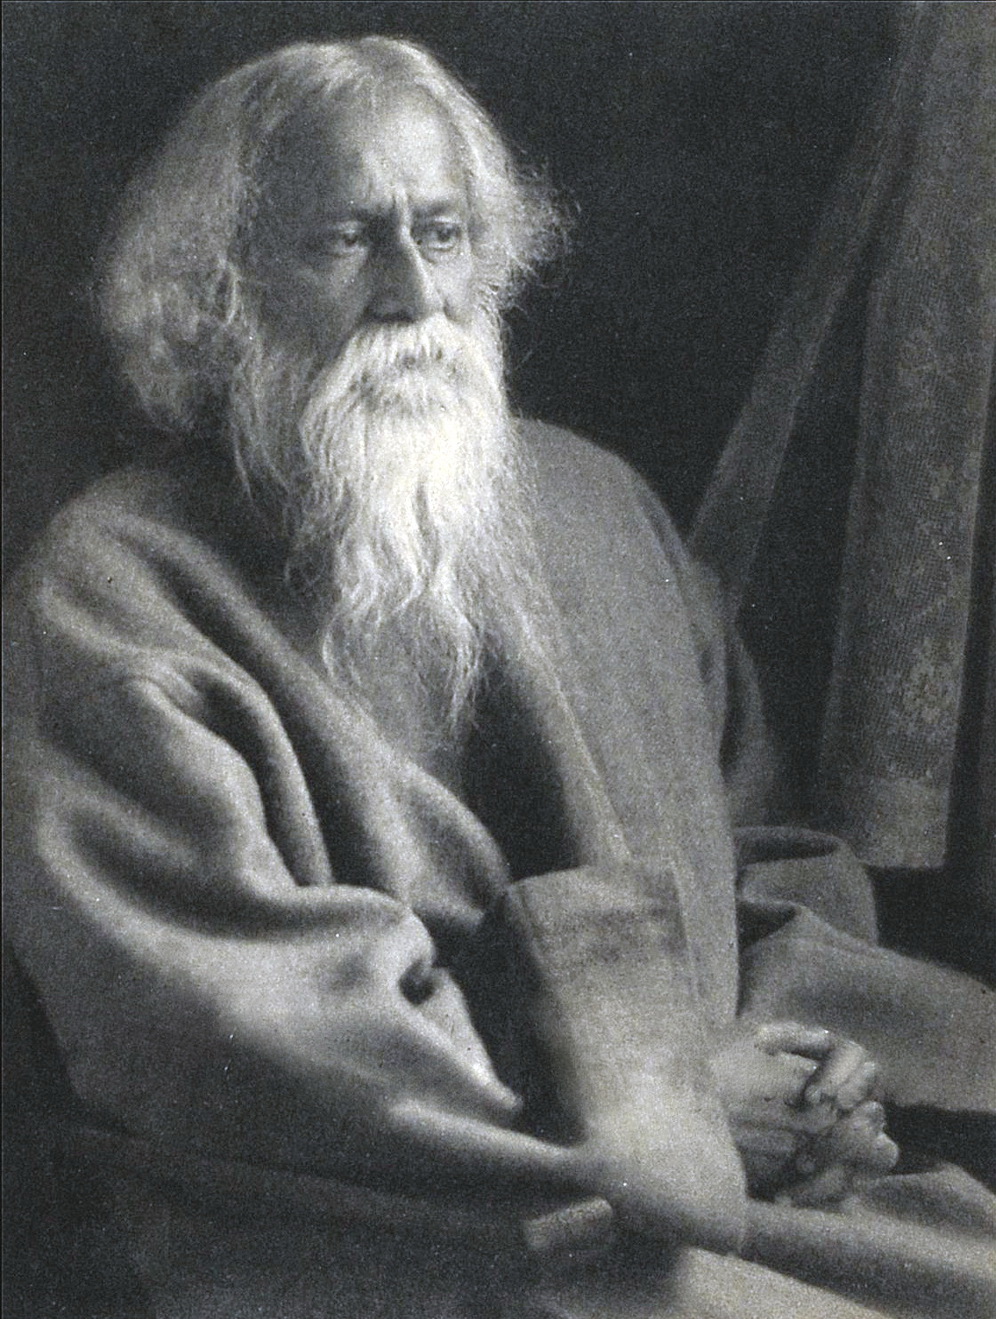 Rabindranath Tagore - 7 May 1861 - 7 August 1941